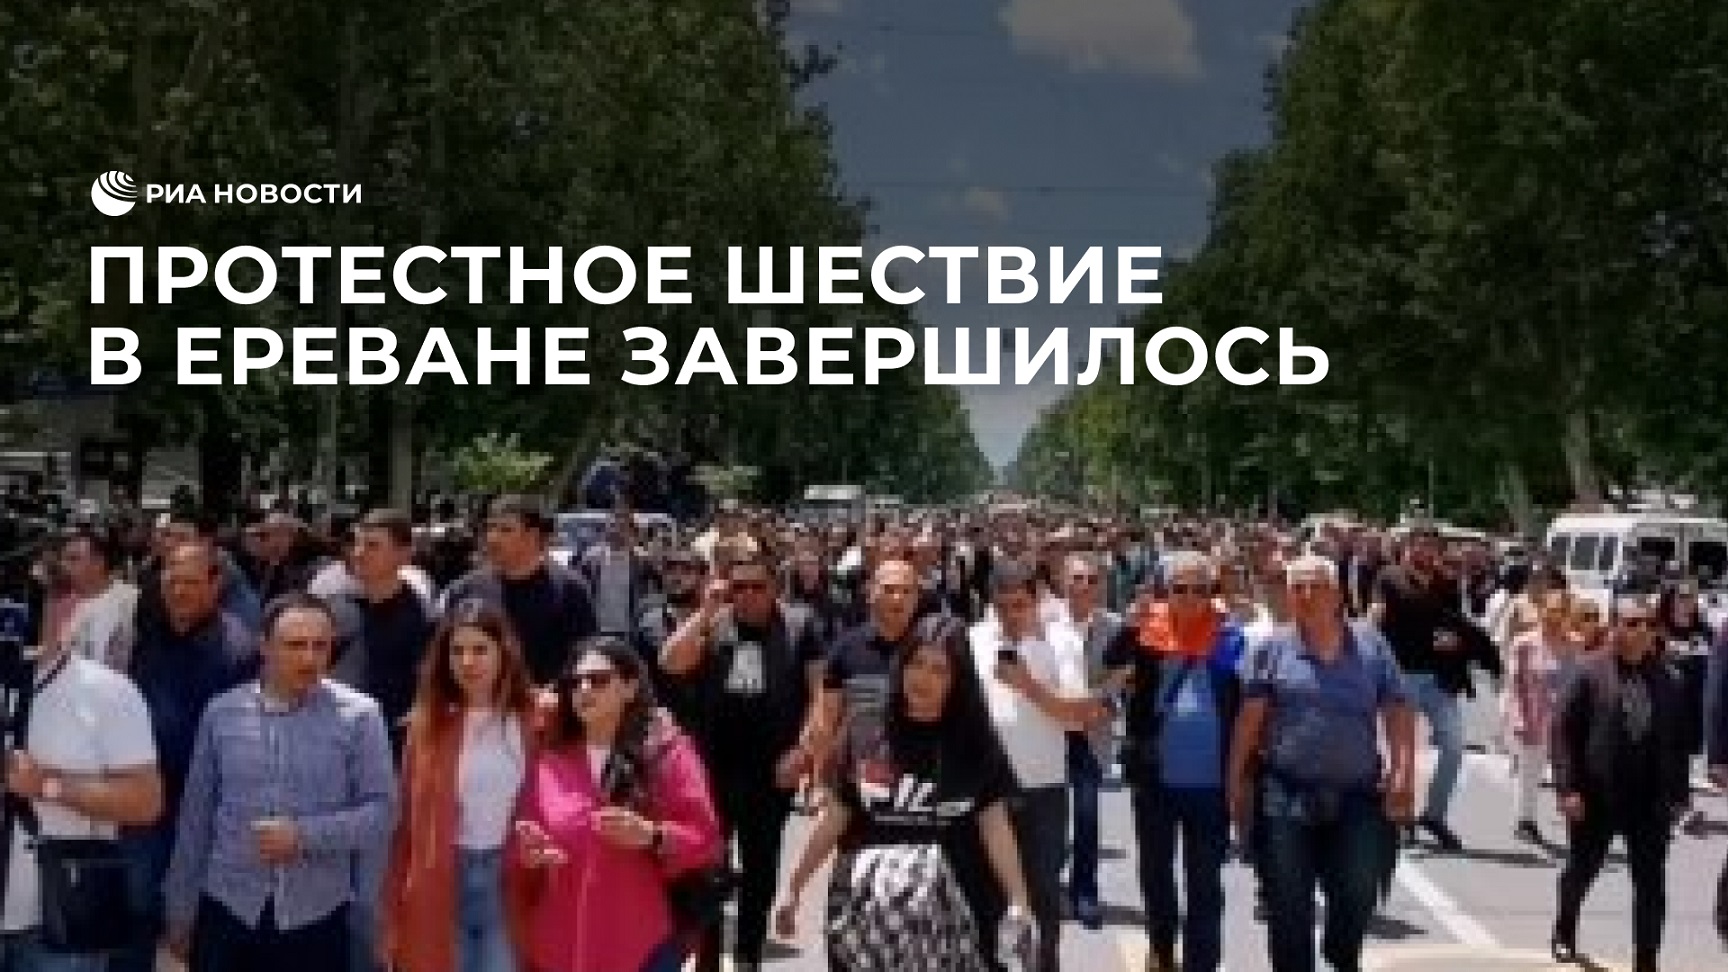 Протестное шествие в Ереване завершилось